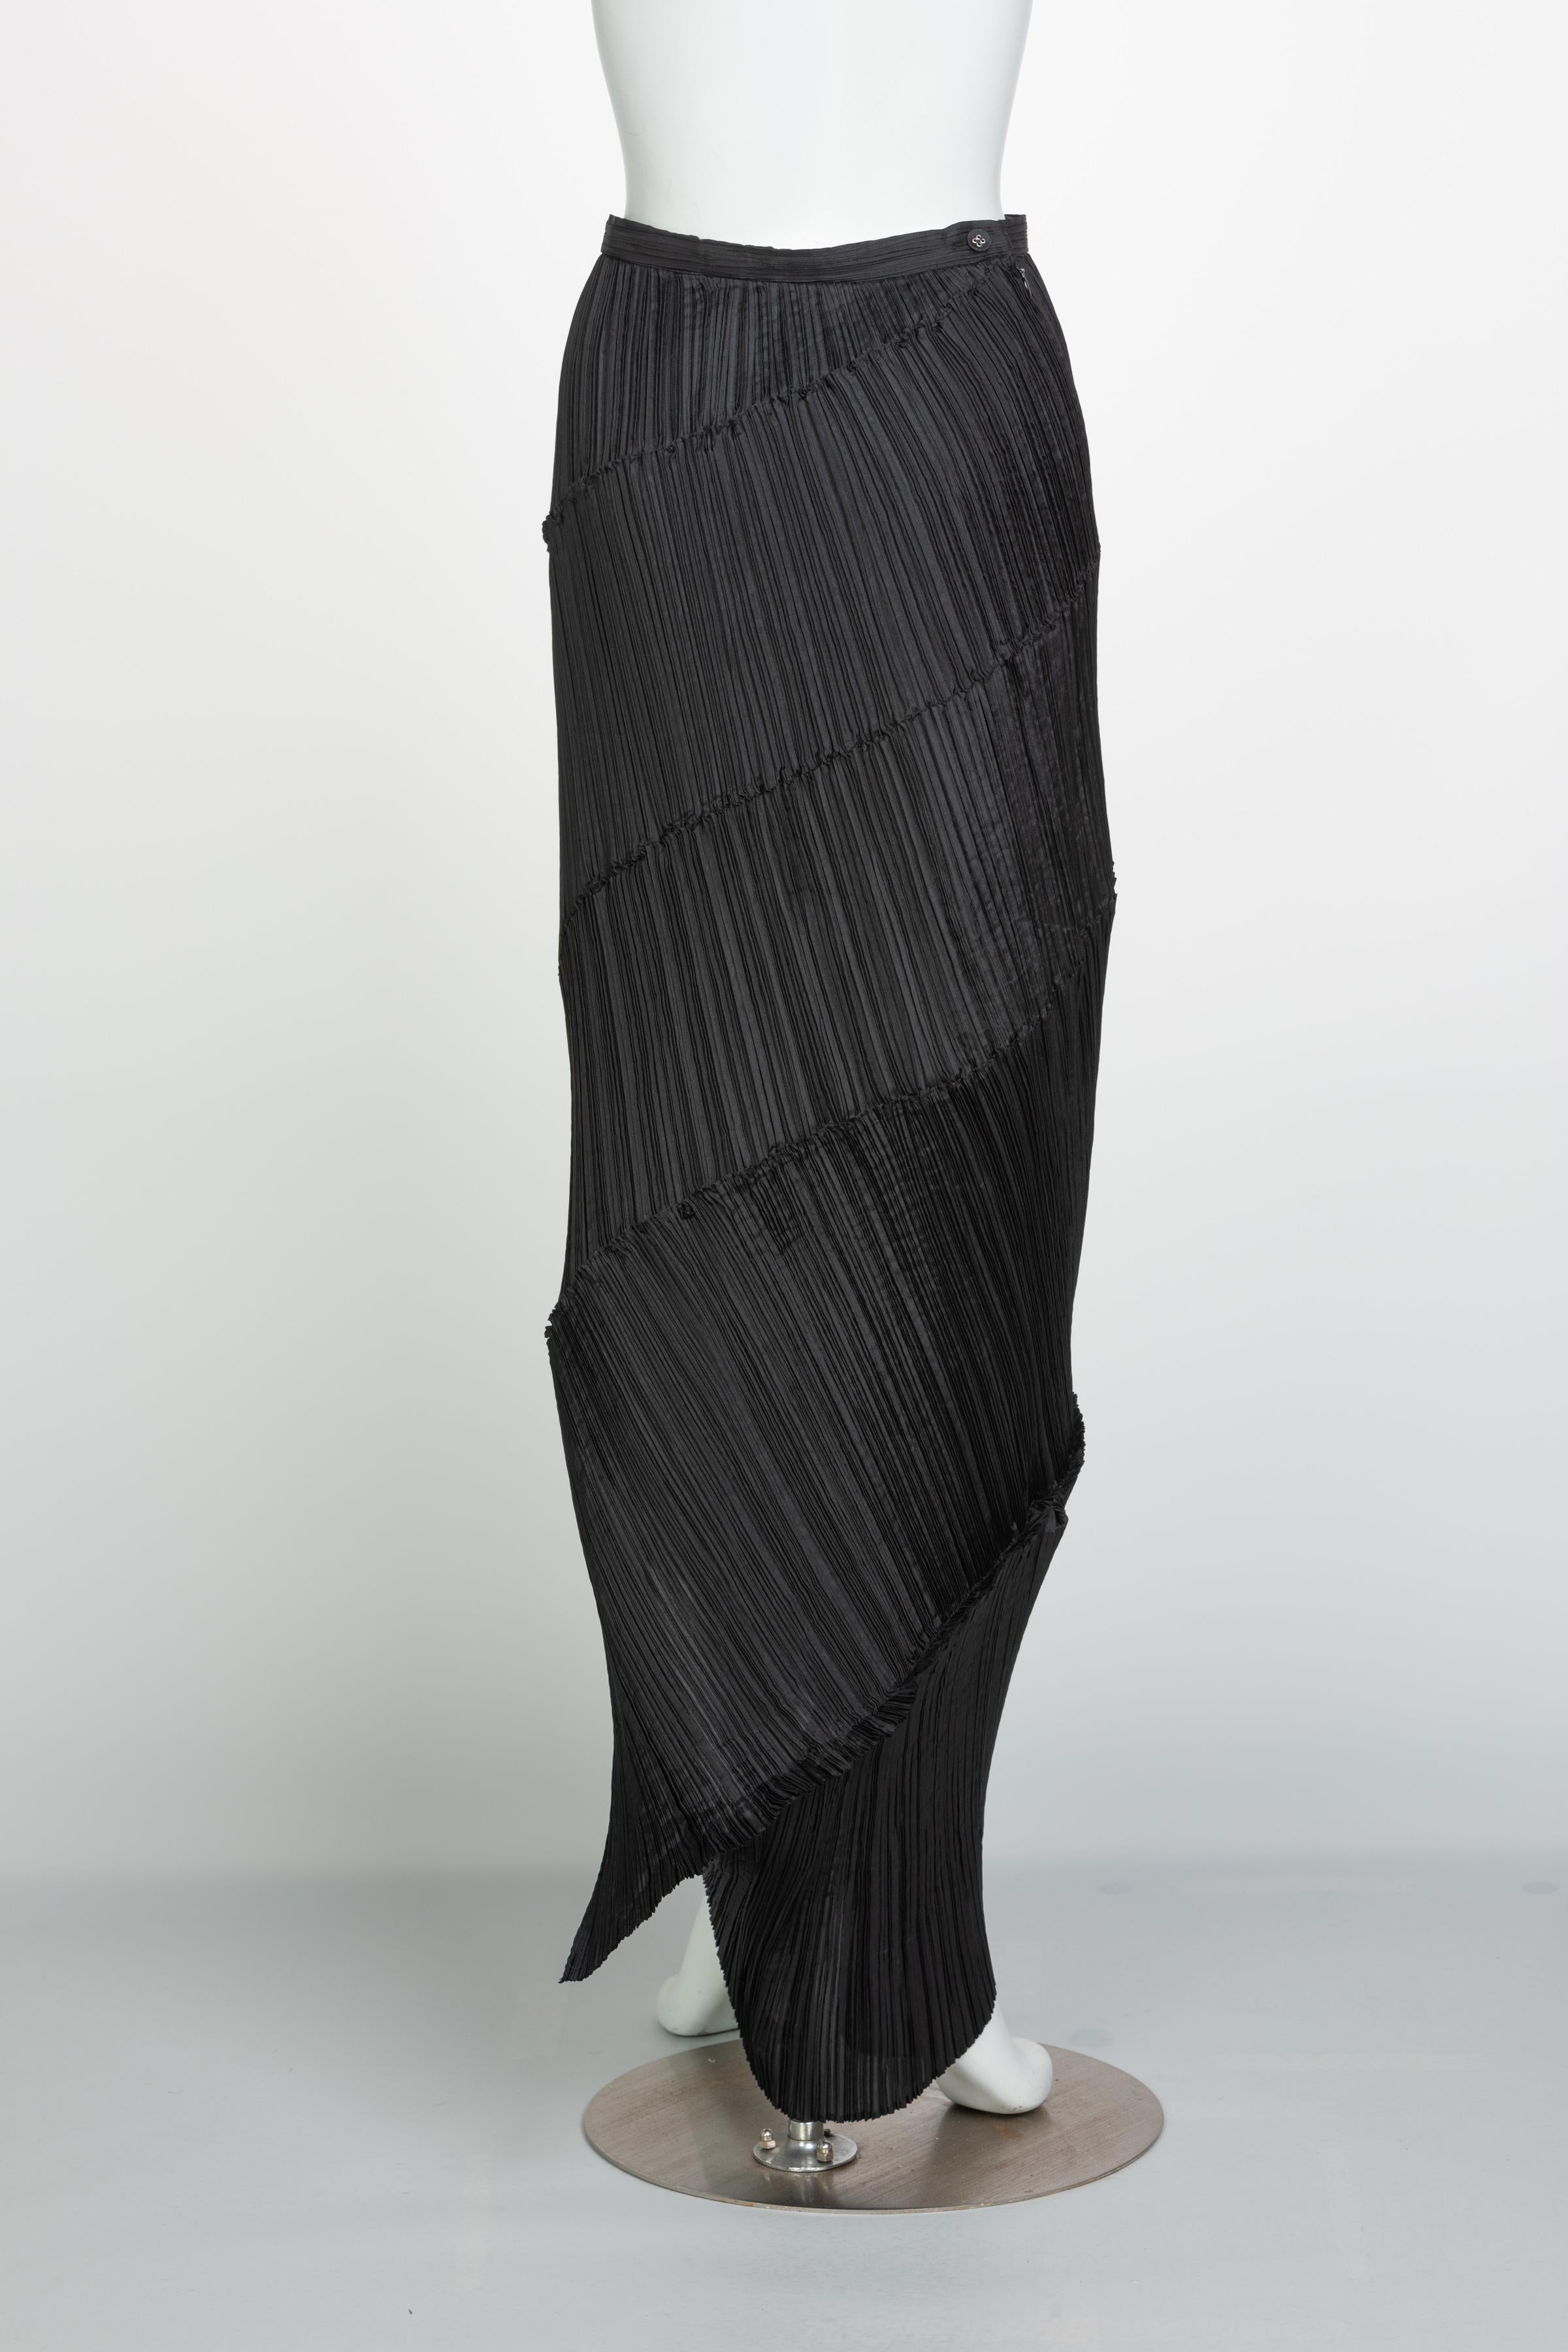 Women's Issey Miyake Black Pleated Spiral Skirt, 1990s